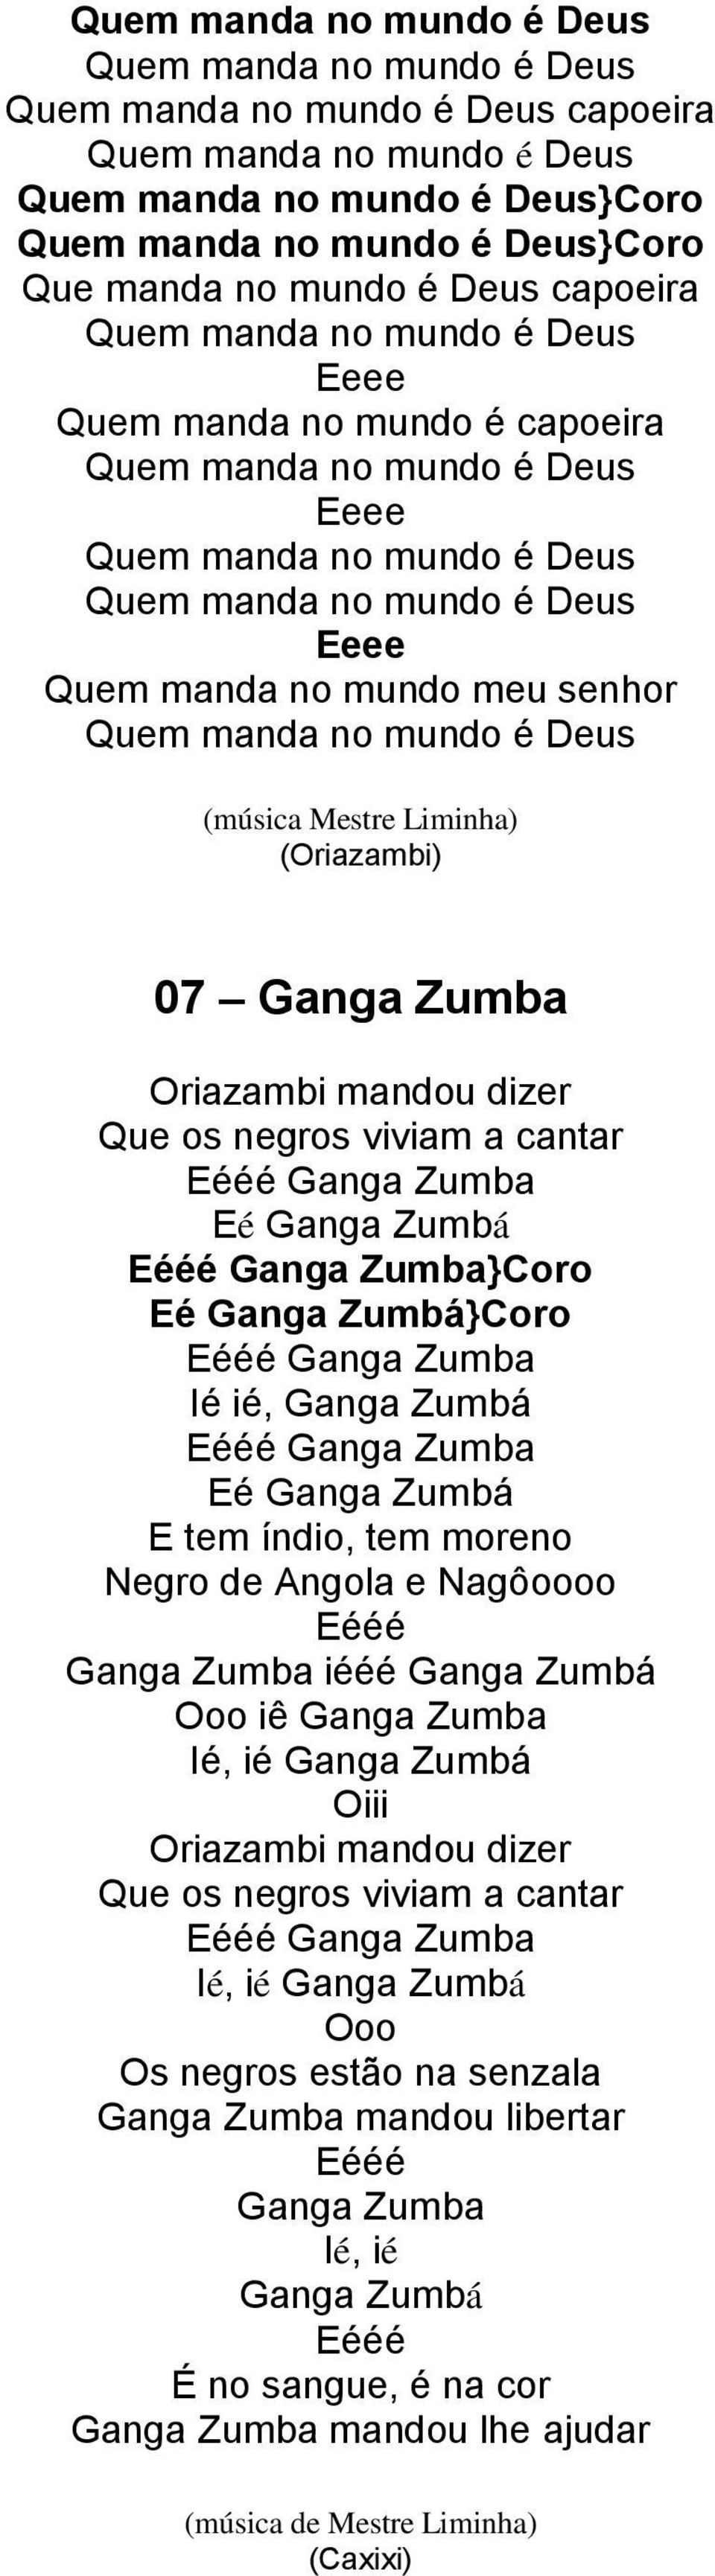 Eééé Ganga Zumba iééé Ganga Zumbá Ooo iê Ganga Zumba Ié, ié Ganga Zumbá Oriazambi mandou dizer Que os negros viviam a cantar Ié, ié Ganga Zumbá Ooo Os negros estão